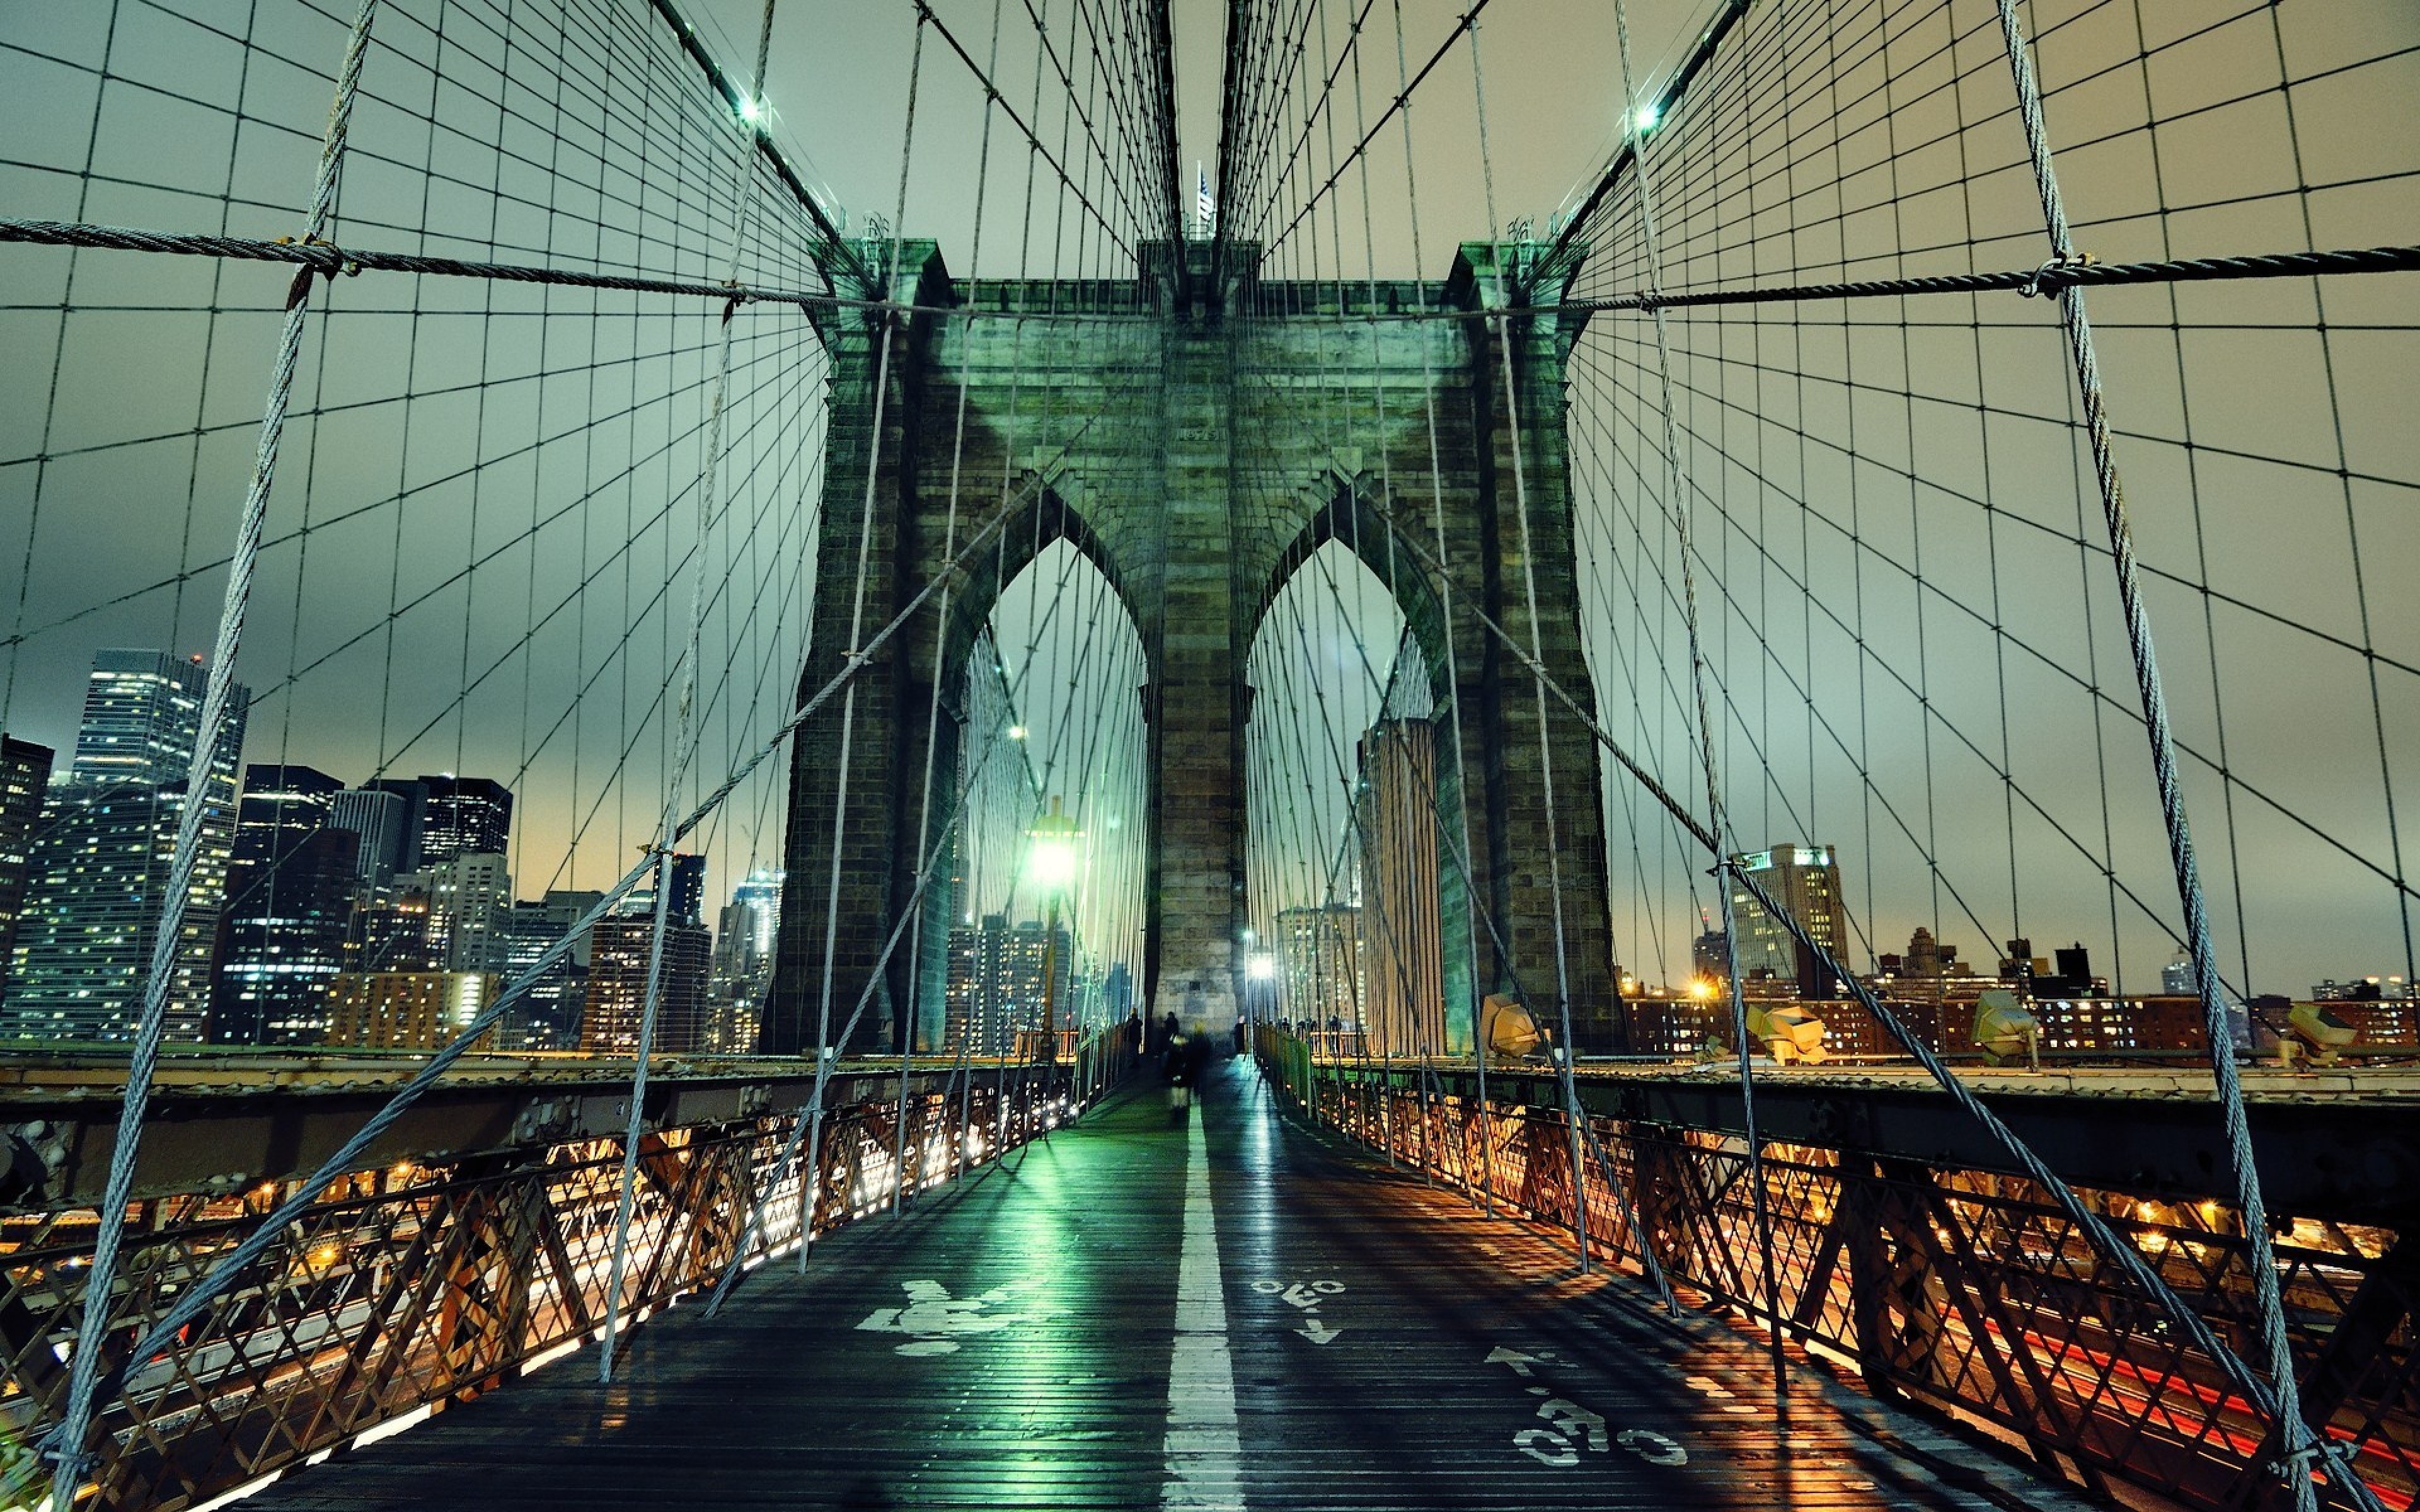 Картинки на обои. Буринский мост Нью-Йорк. Манхэттен мост Нью-Йорк. Бруклинский мост, Нью-Йорк, США. Бруклинский мост Манхэттен.